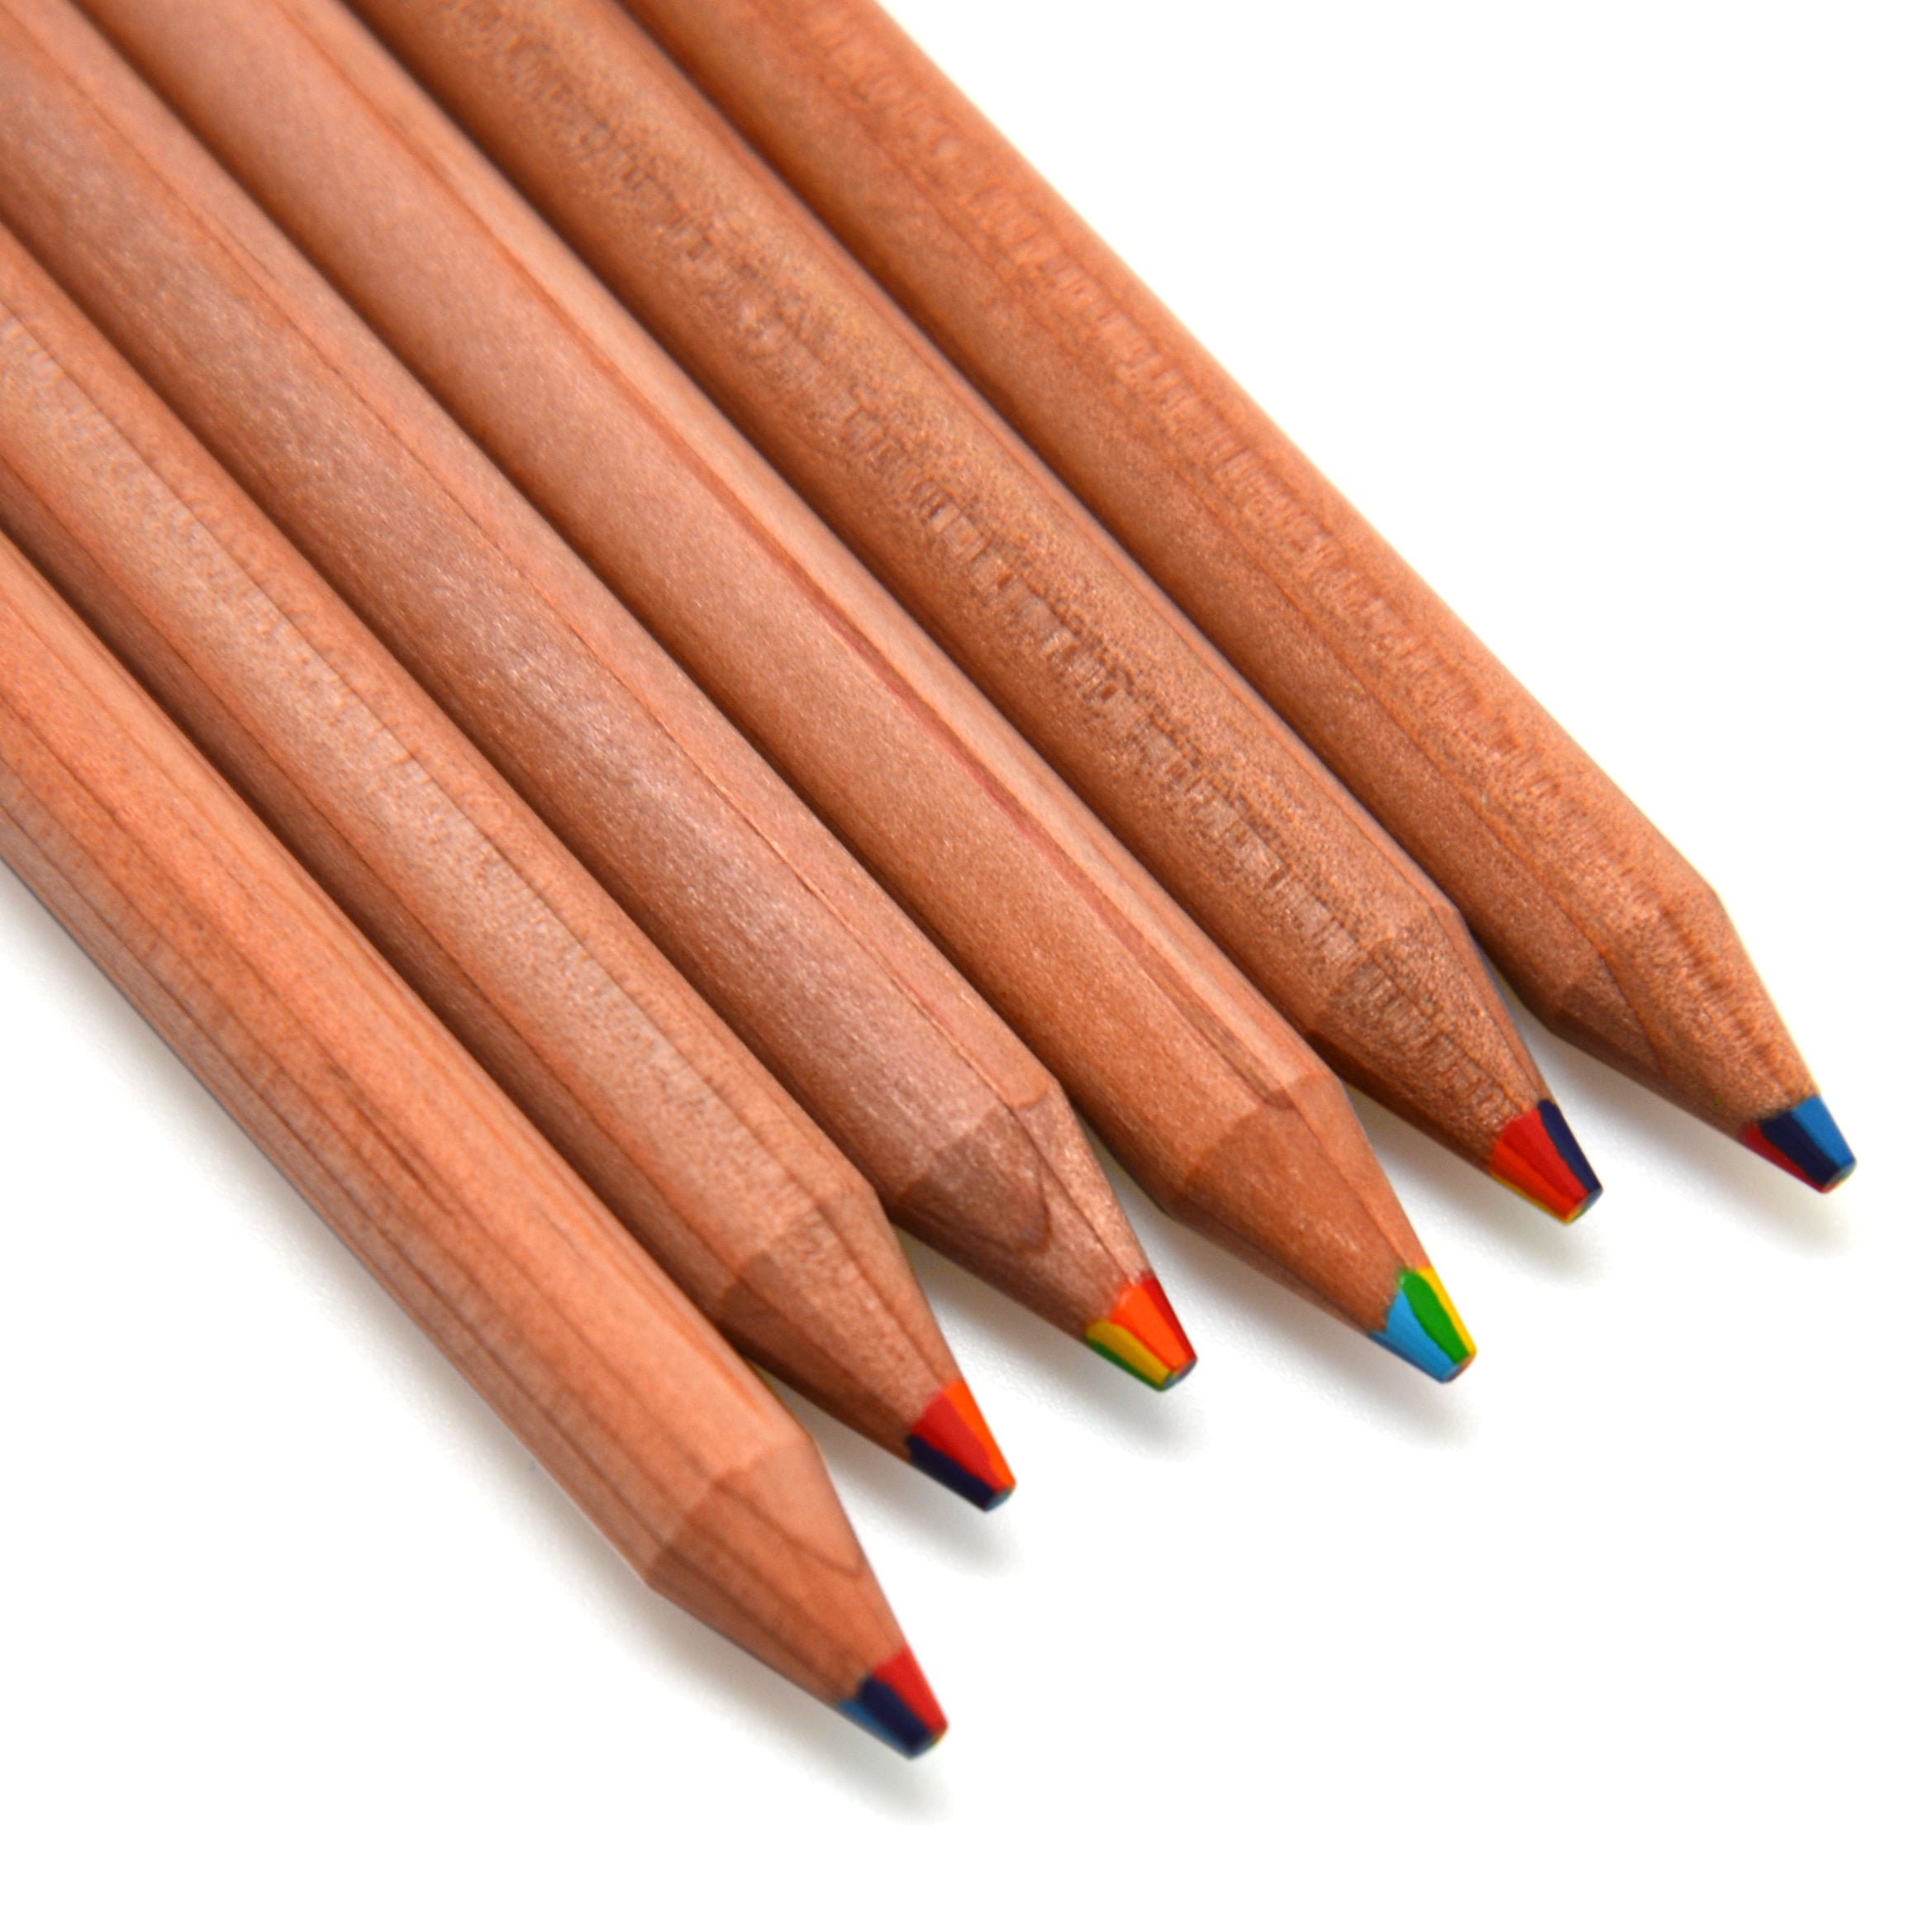  Short Jumbo Pencils for Kids, Preschoolers, Kindergarten,  Toddlers, & Beginners - 12 Fat Pencils and 1 Sharpener & Eraser, Pencils  #2, Triangle Grip, Big Pencils, Kids Pencils (Blue) : Office Products